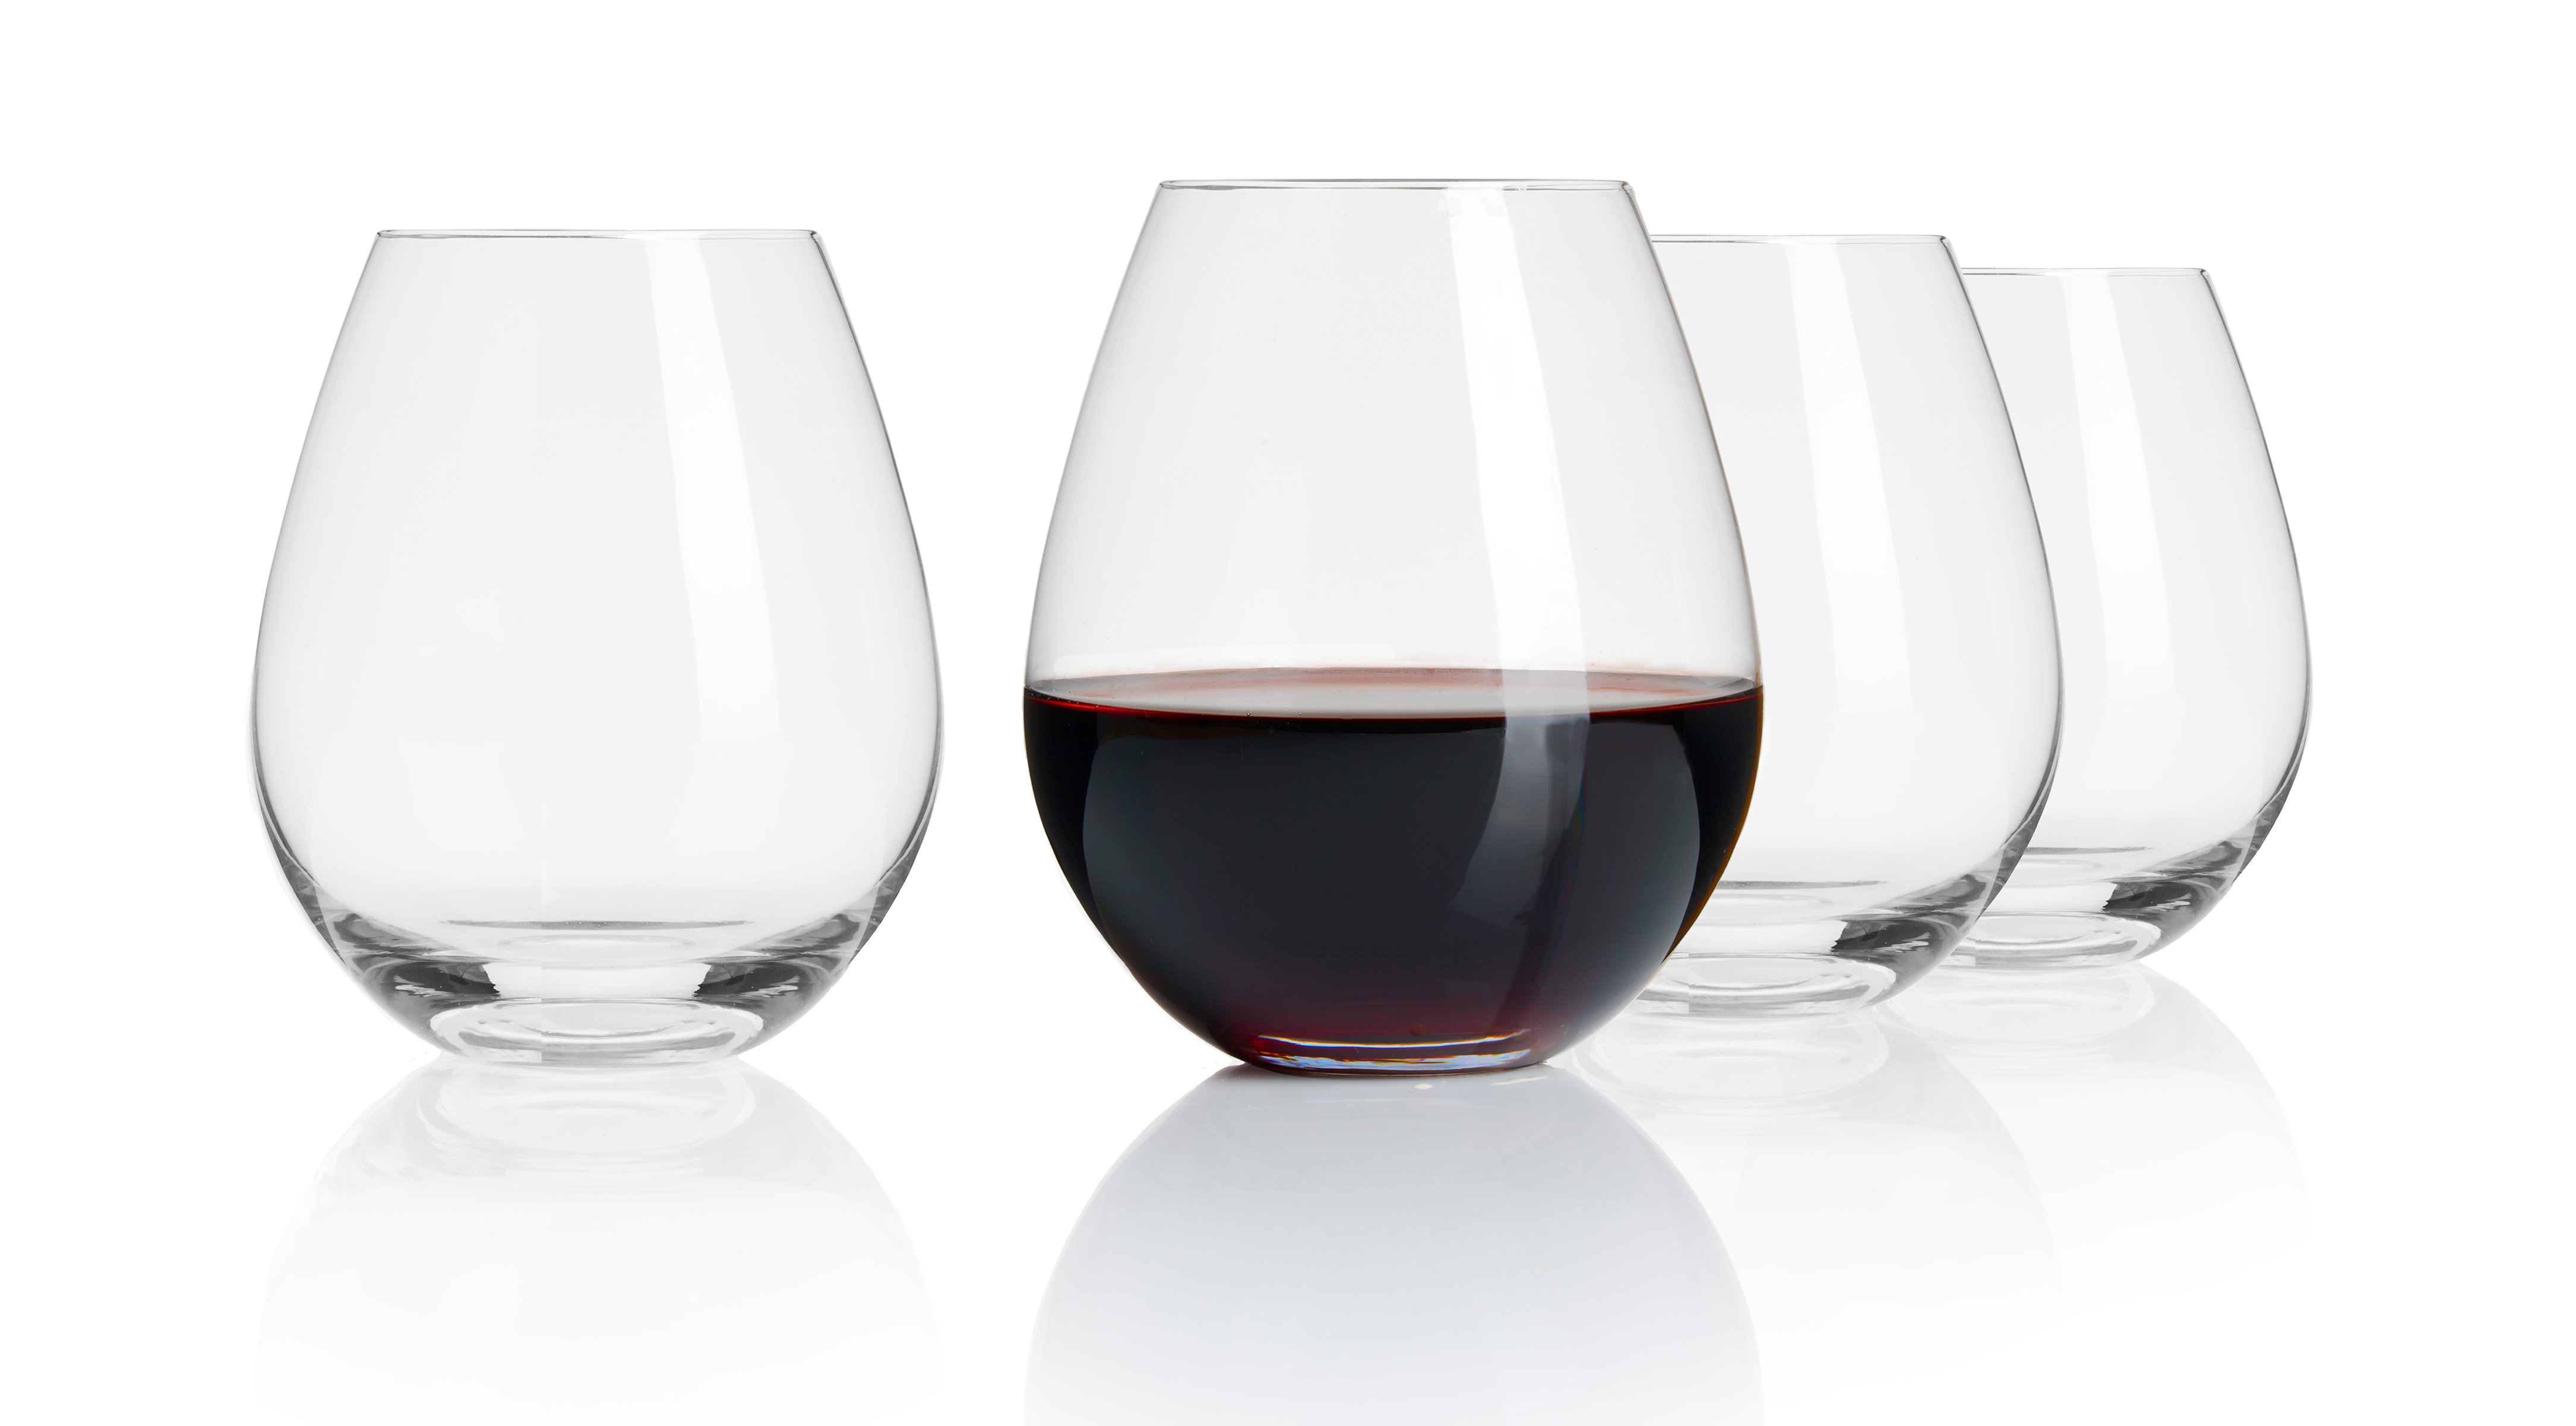 https://assets.wfcdn.com/im/15372379/compr-r85/2520/252080839/braga-stemless-wine-glasses-set-of-4.jpg